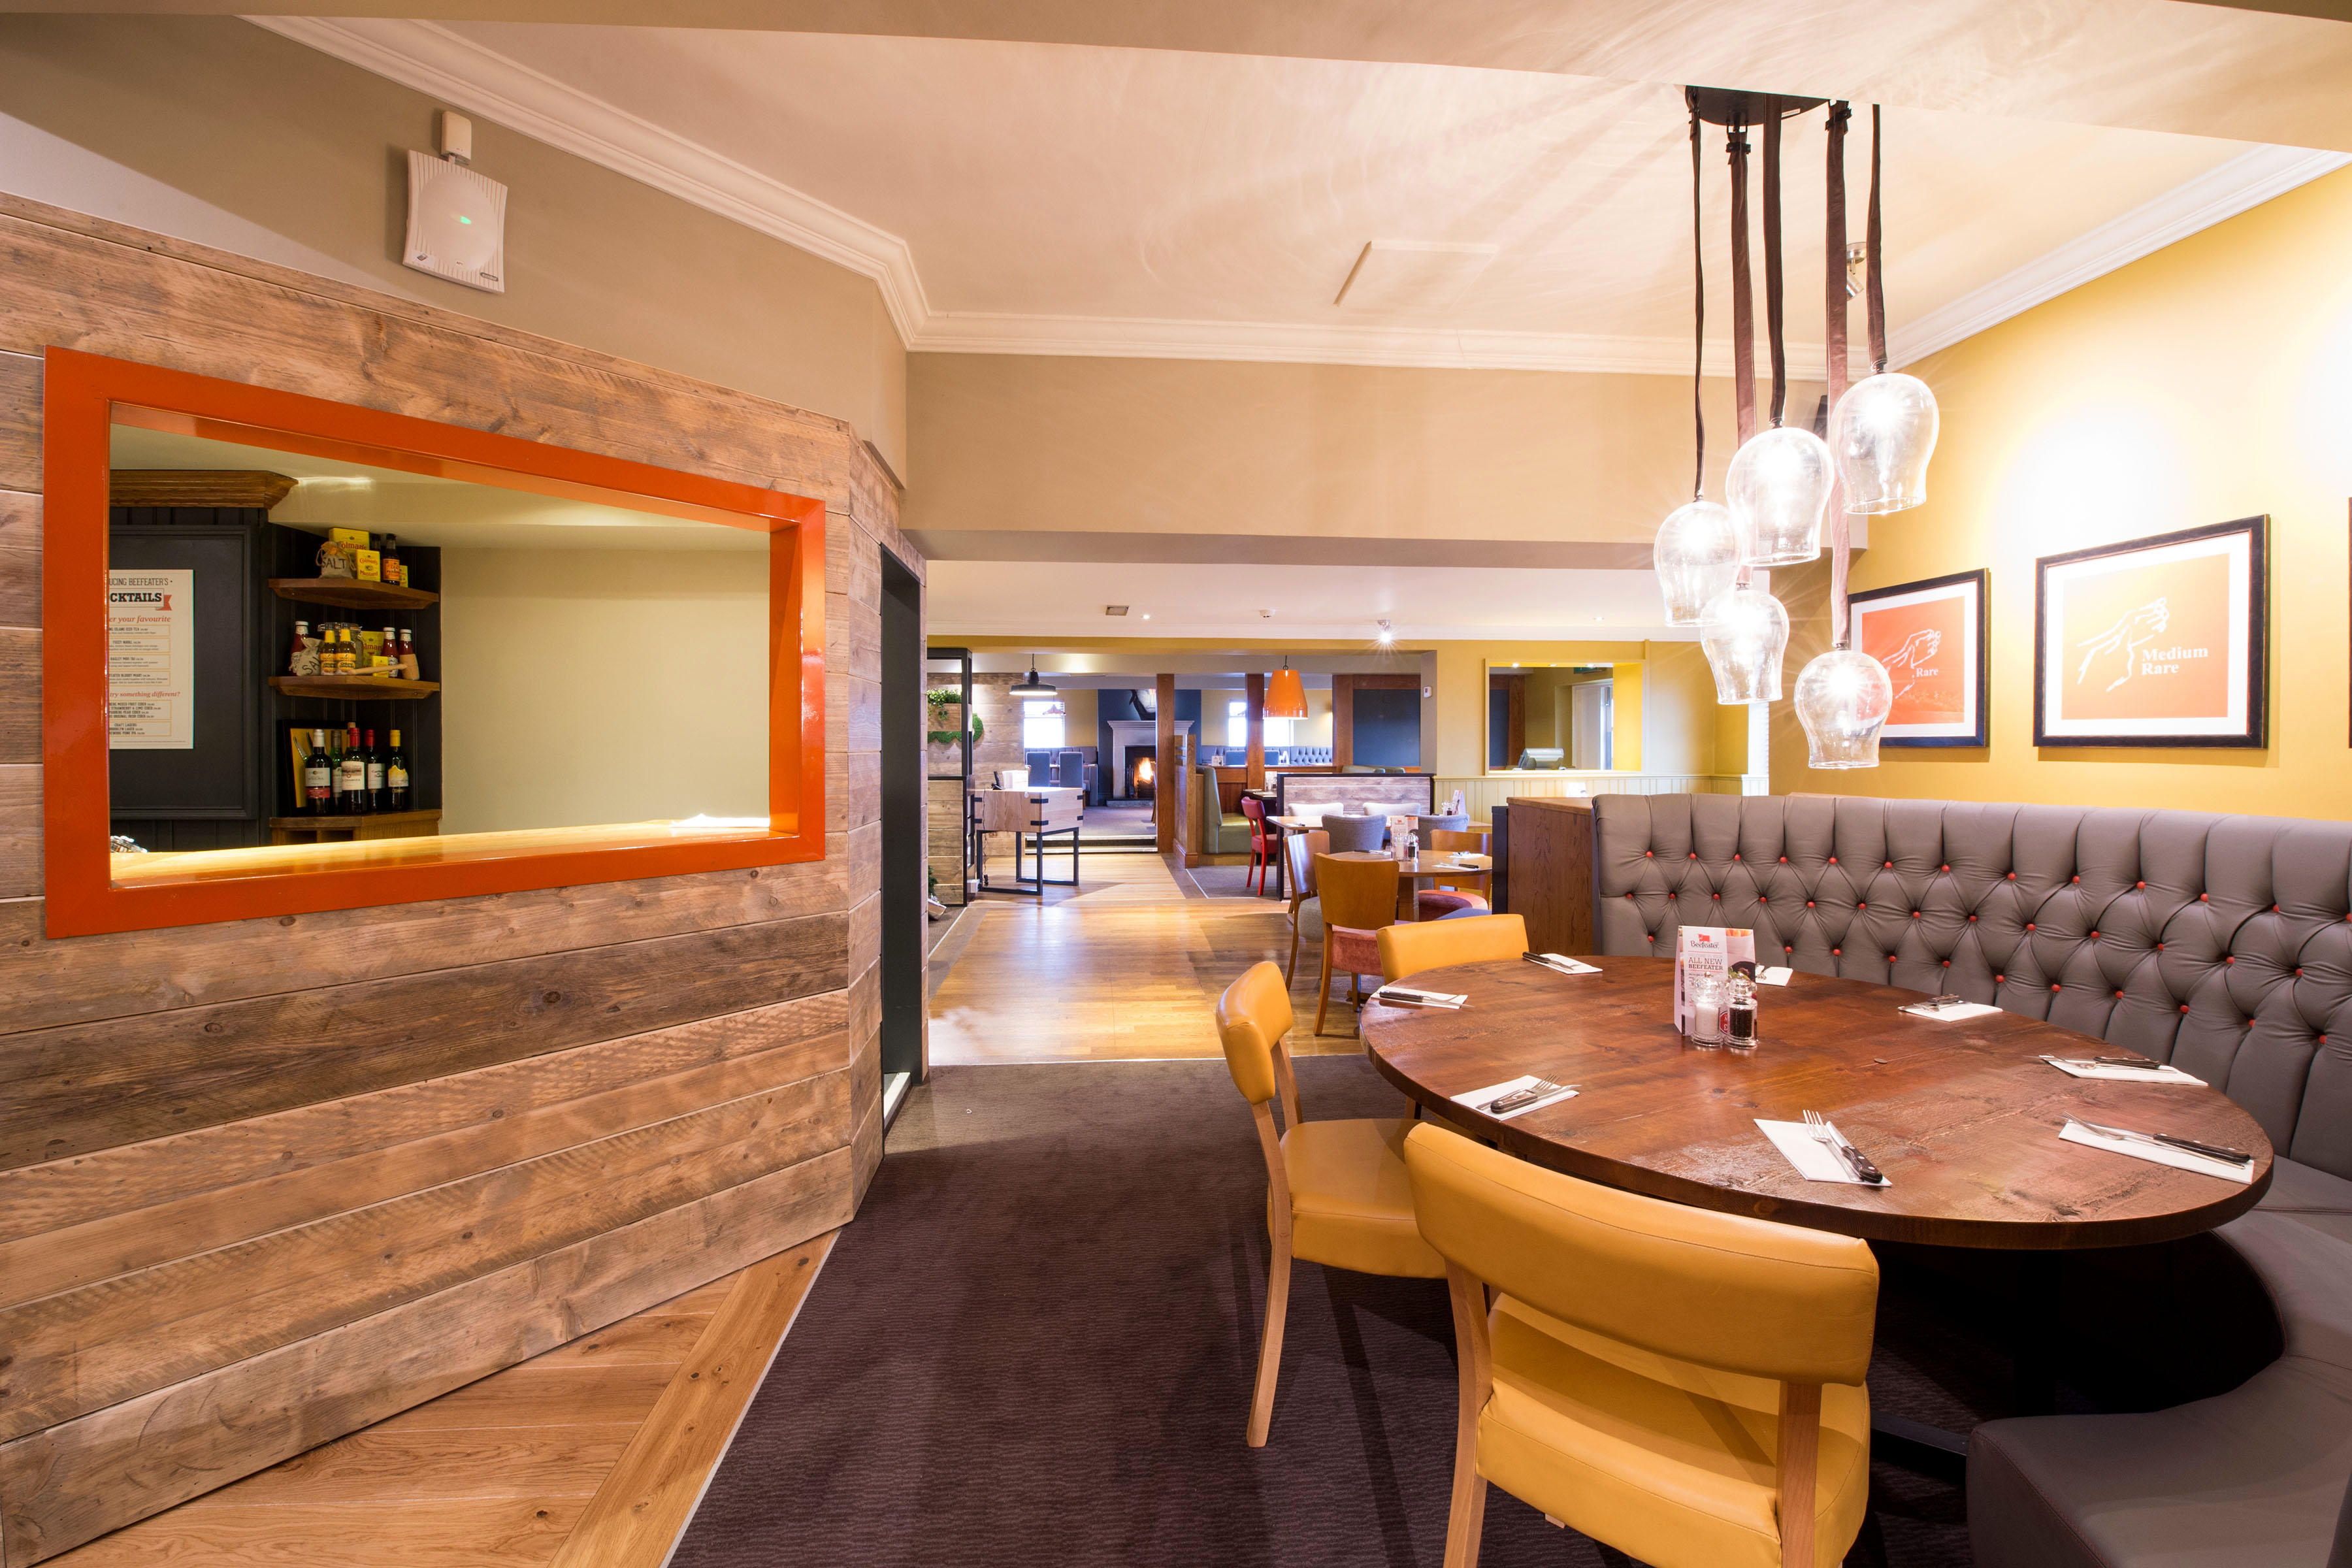 Beefeater restaurant interior Premier Inn Chesterfield West hotel Chesterfield 03337 774596